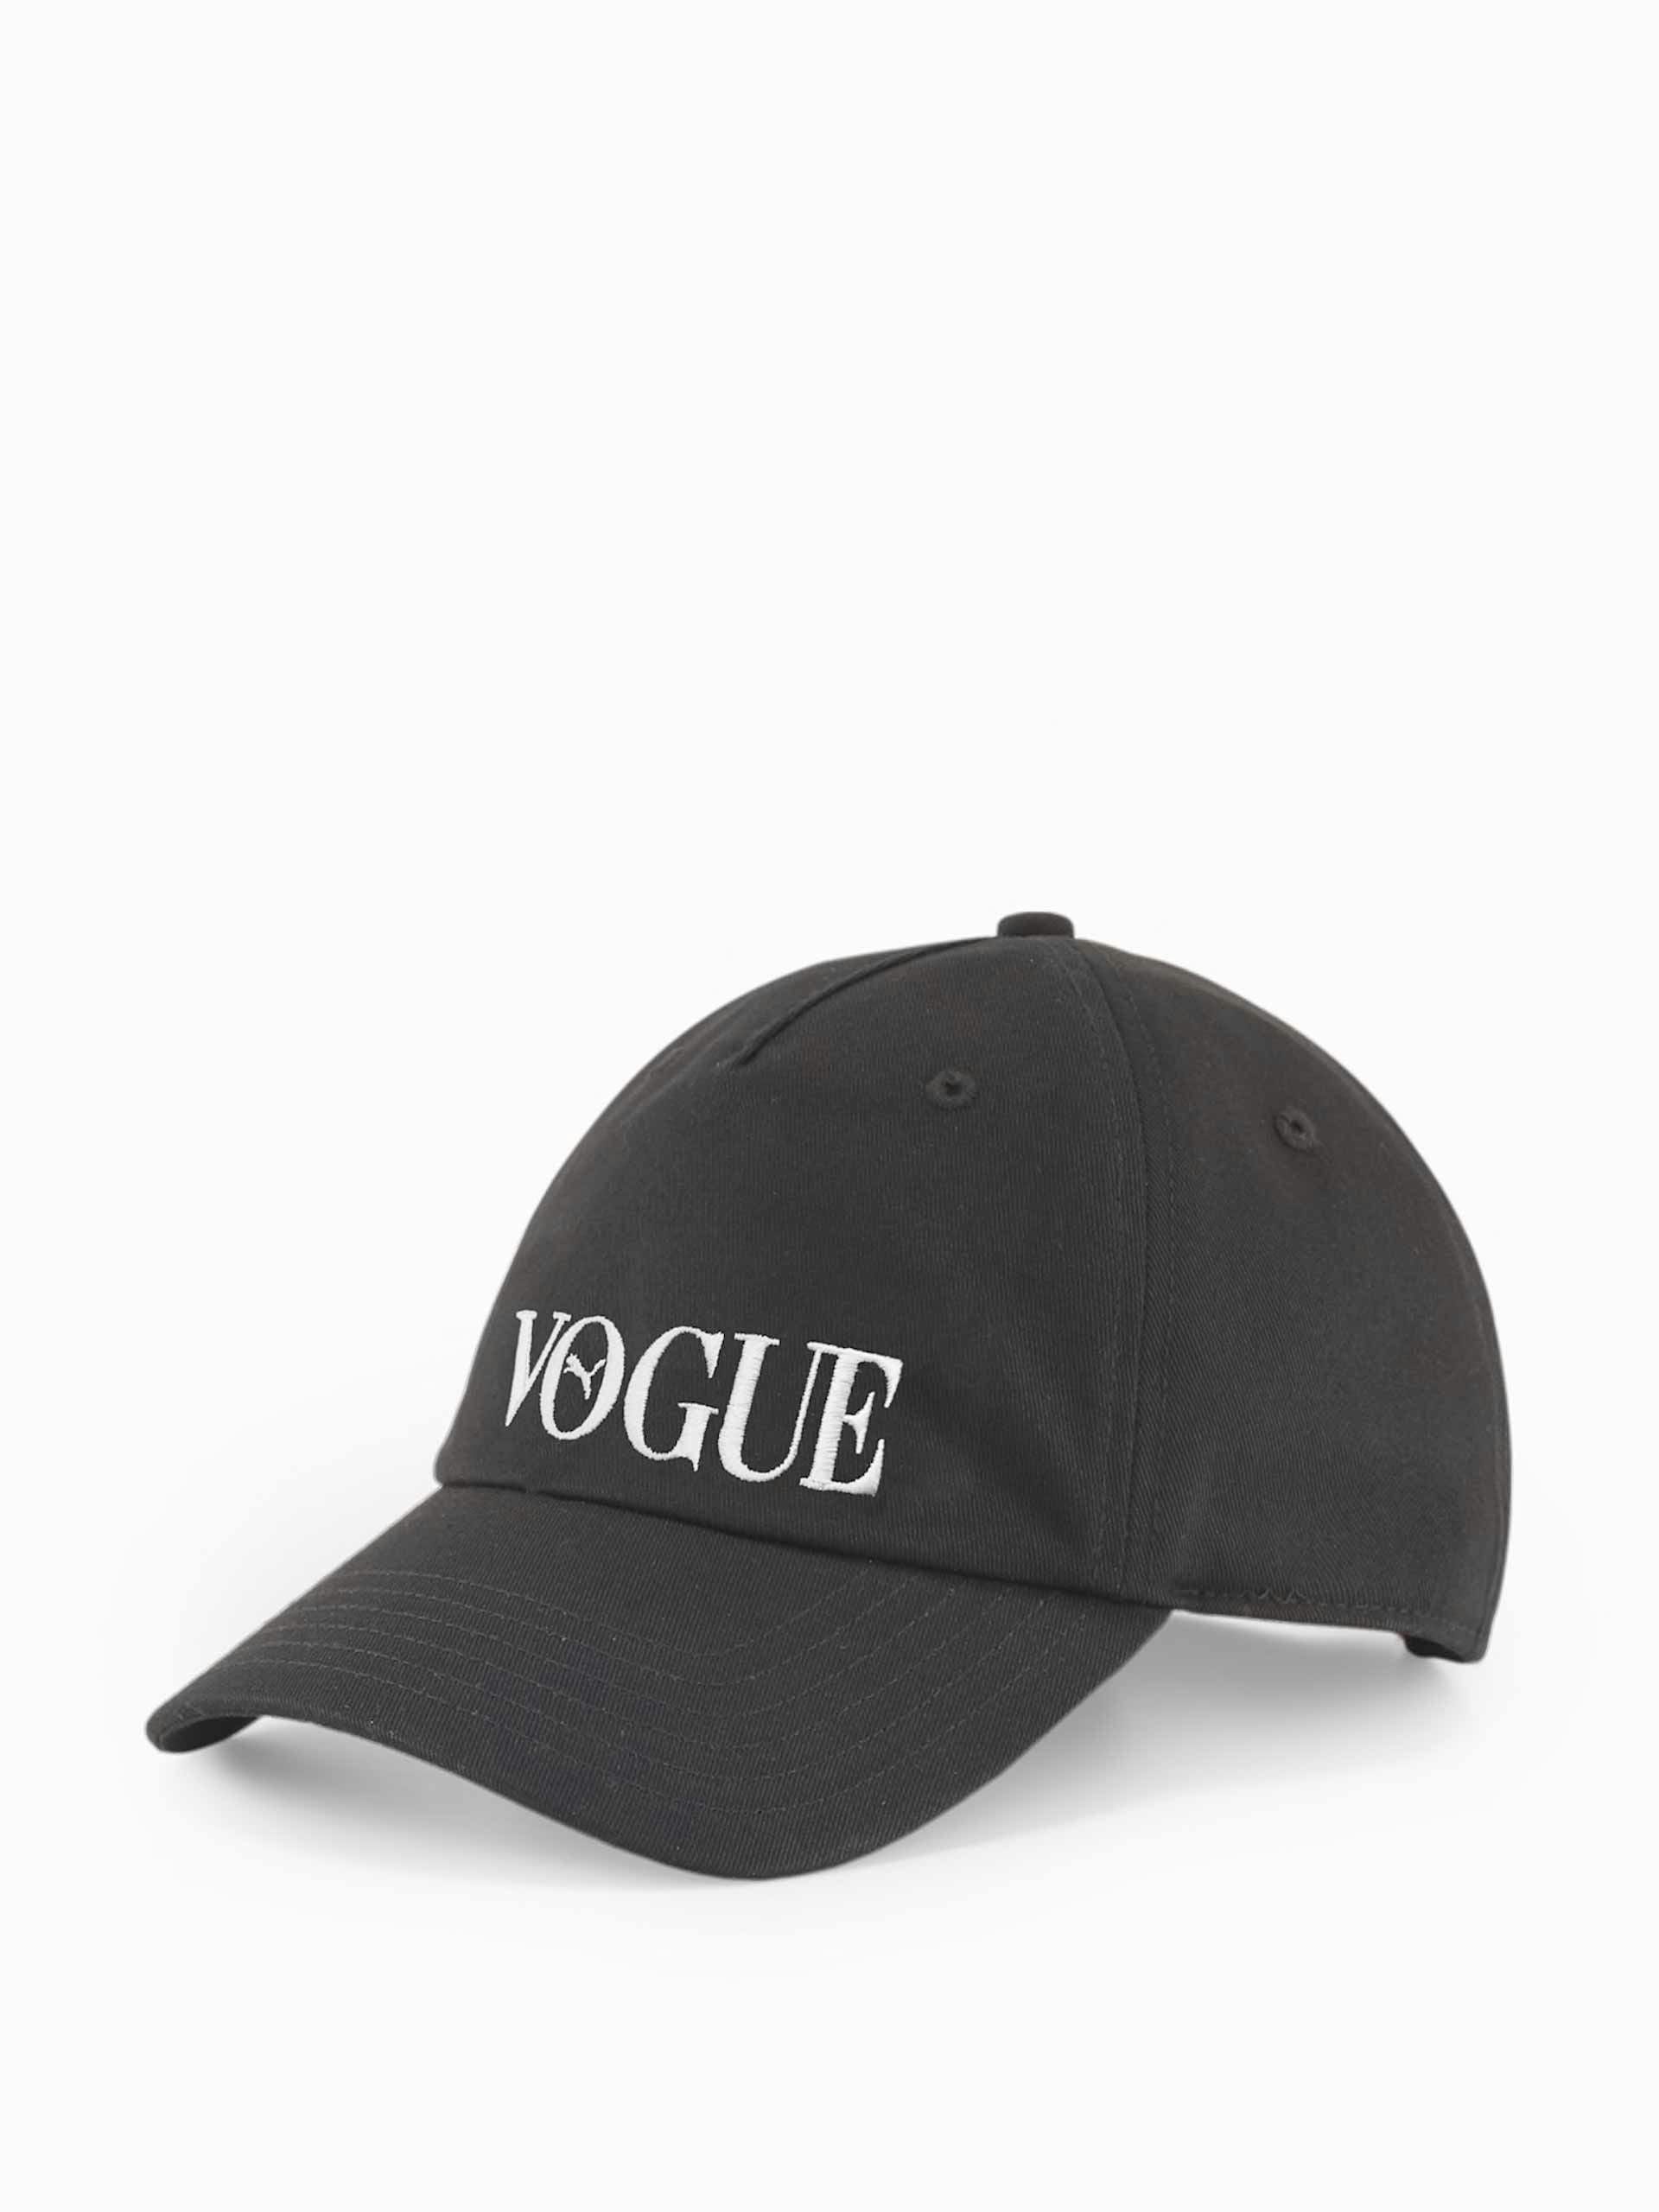 Puma X Vogue baseball cap